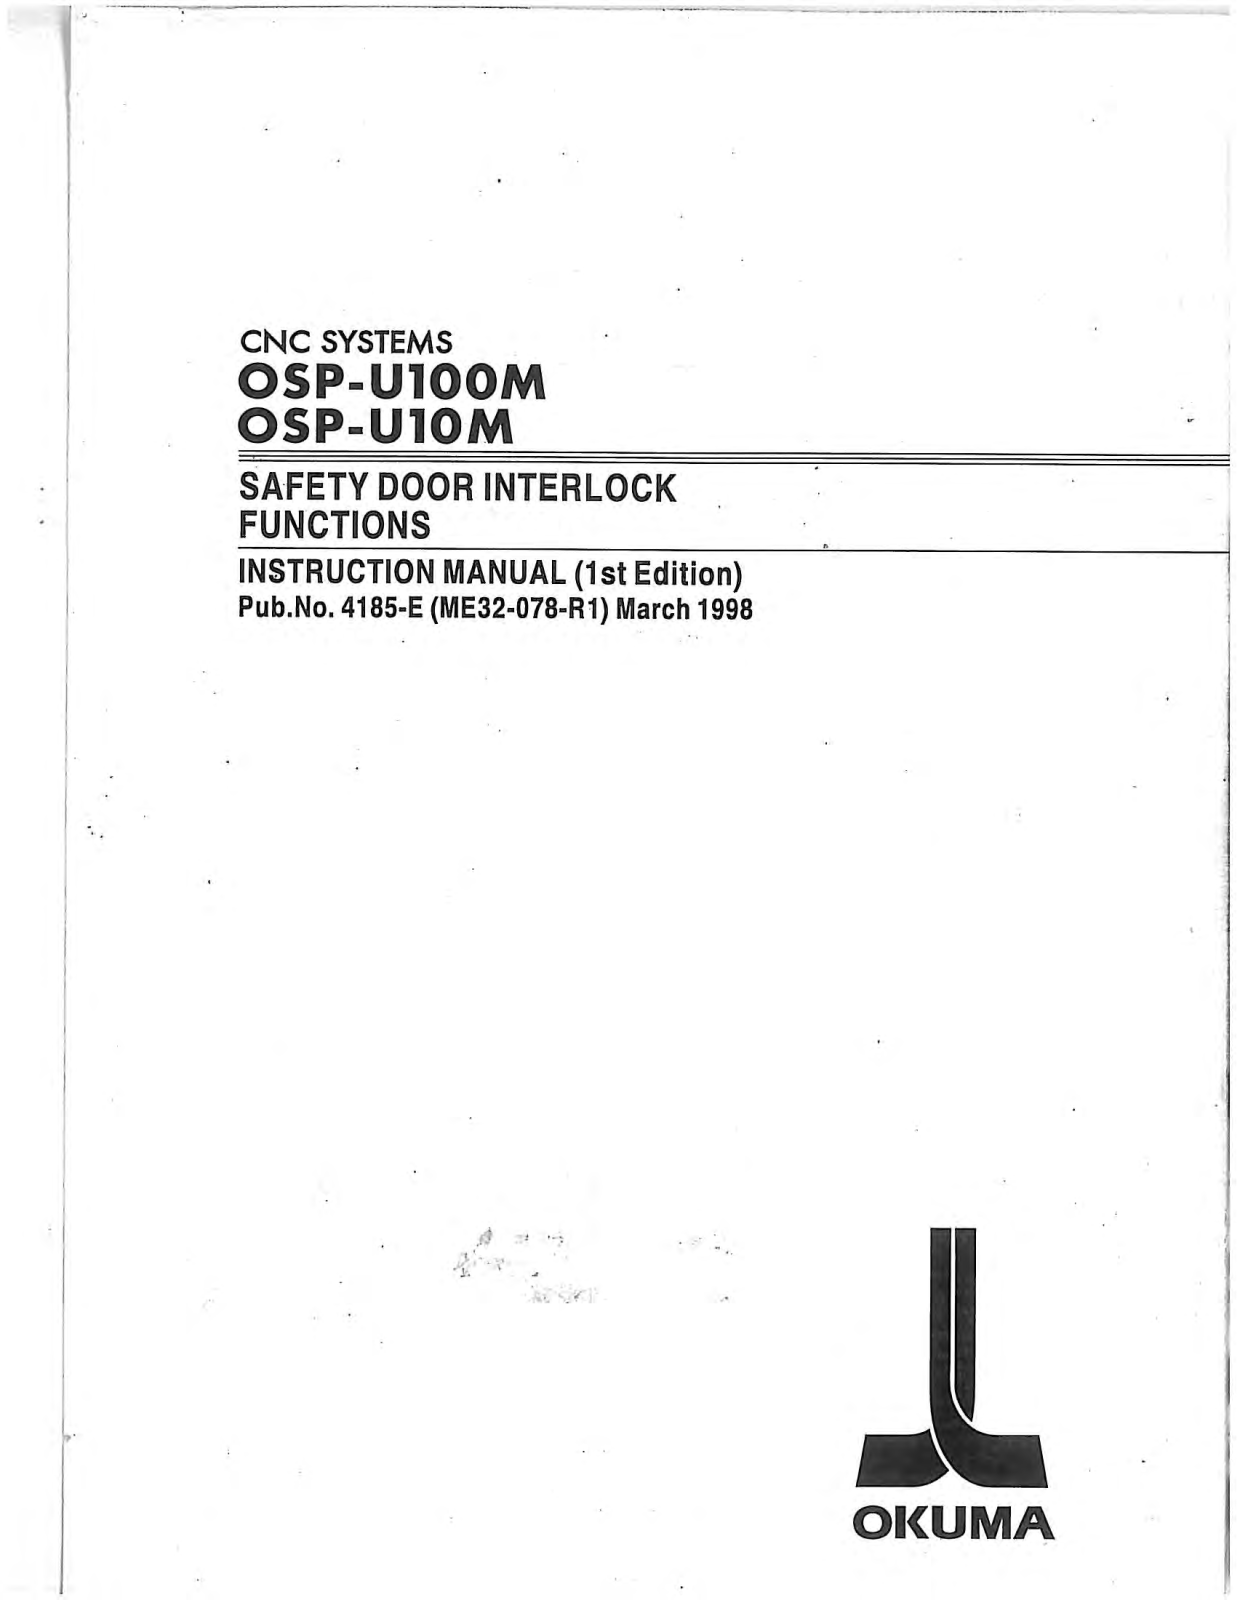 okuma OSP-UI00M Instruction Manual